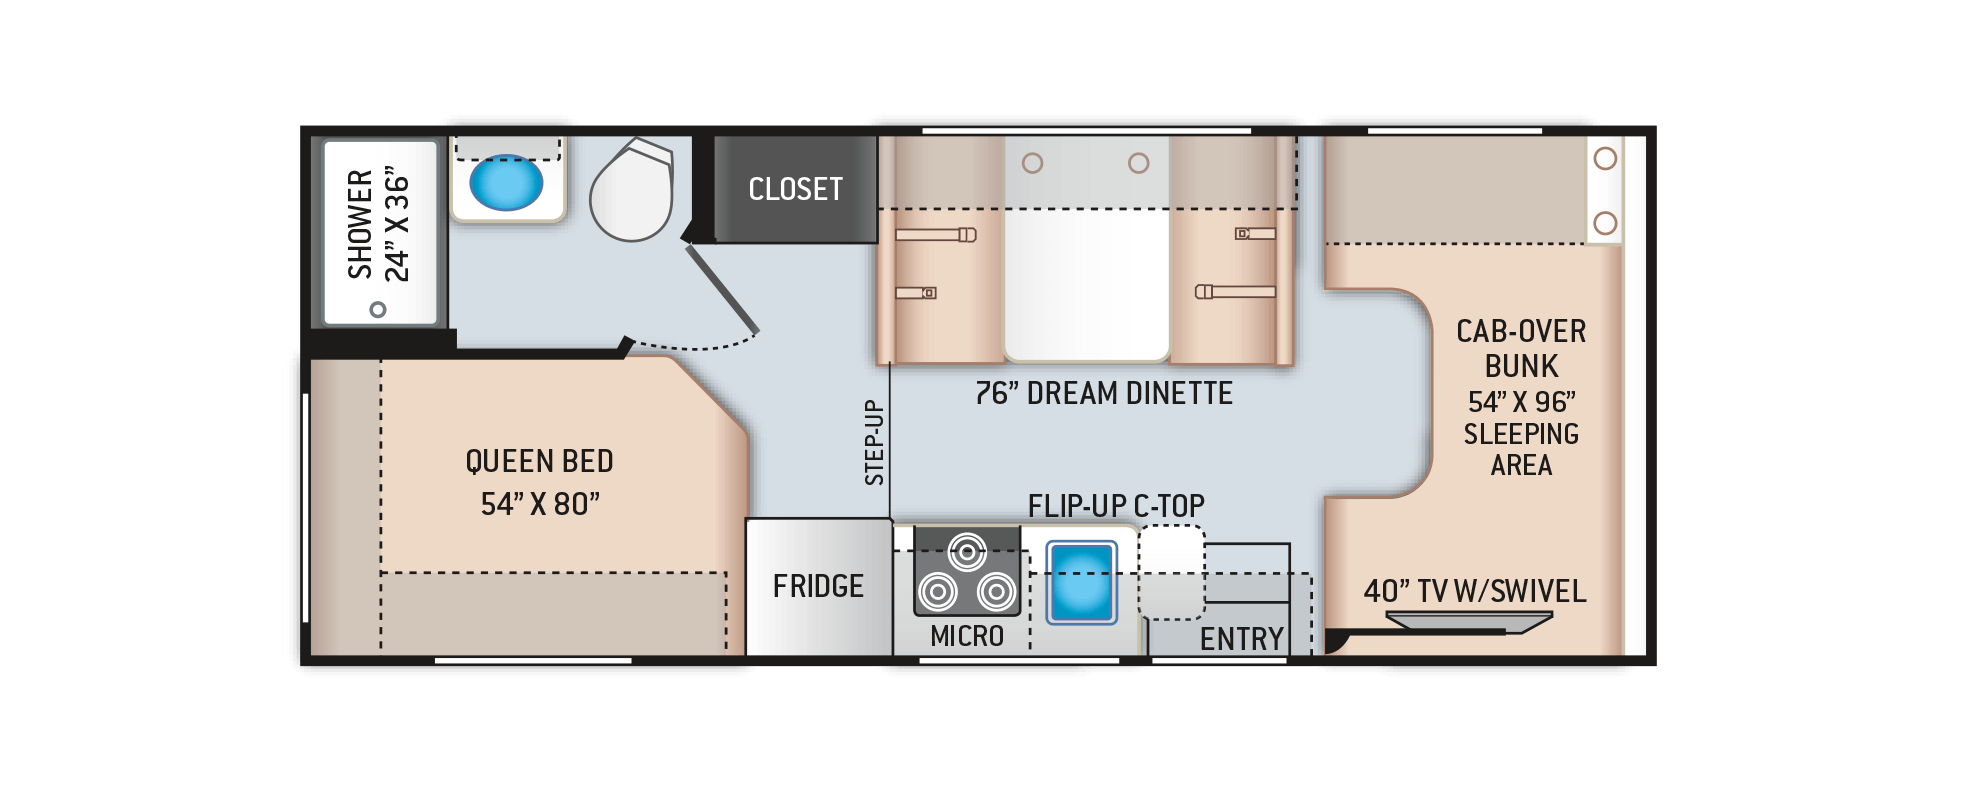 Daybreak Class C Motorhomes - Floor Plan: 22GO